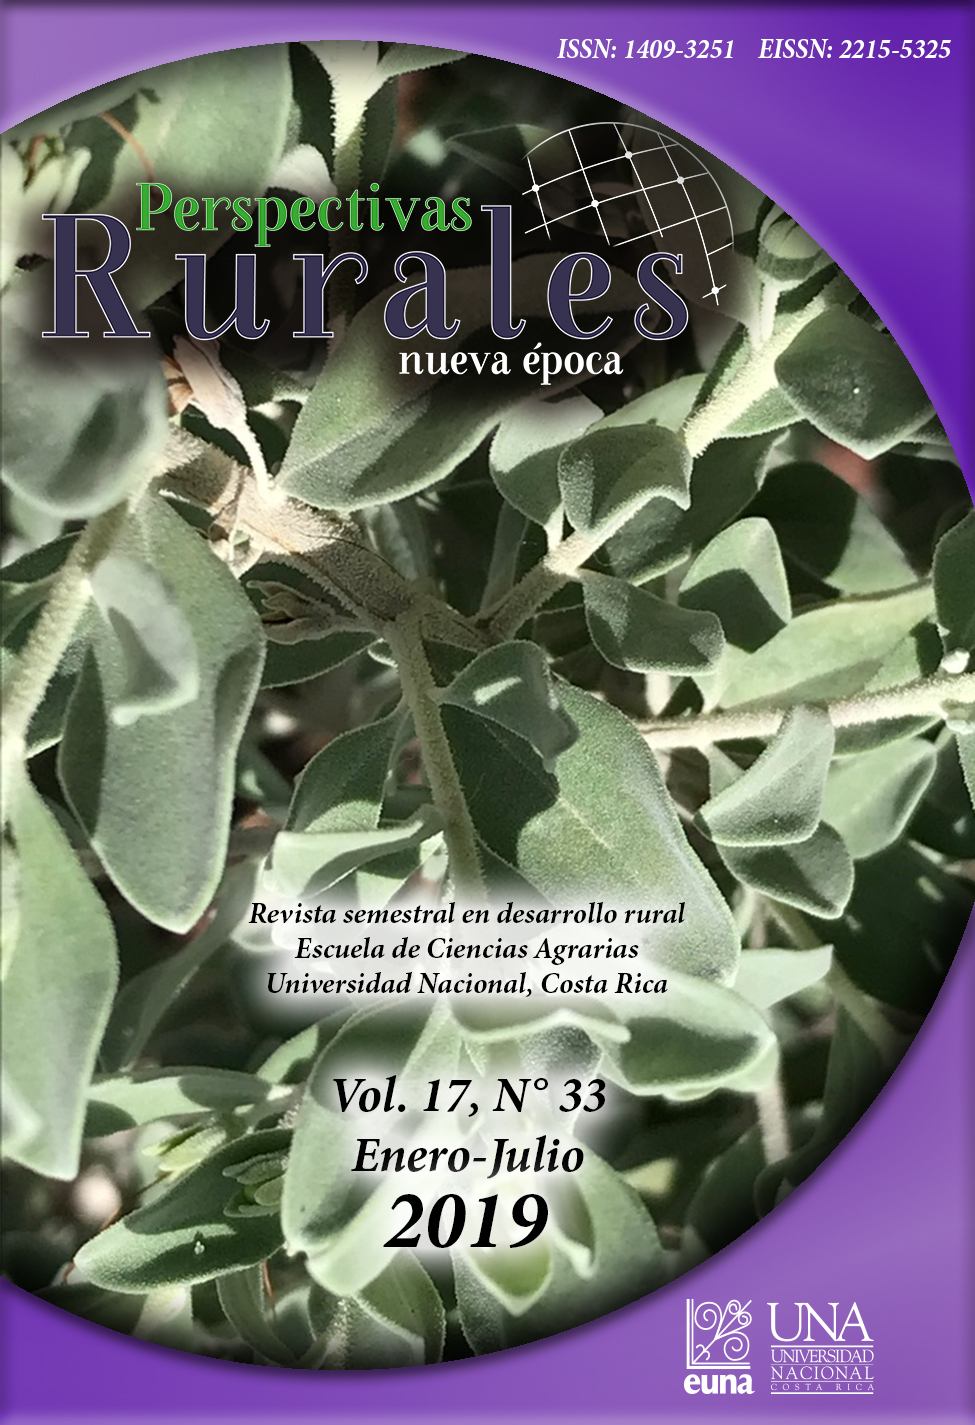 					Ver Vol. 17 Núm. 33 (2019): Revista Perspectivas Rurales Vol. 17 Núm. 33 (Enero - Junio 2019)
				